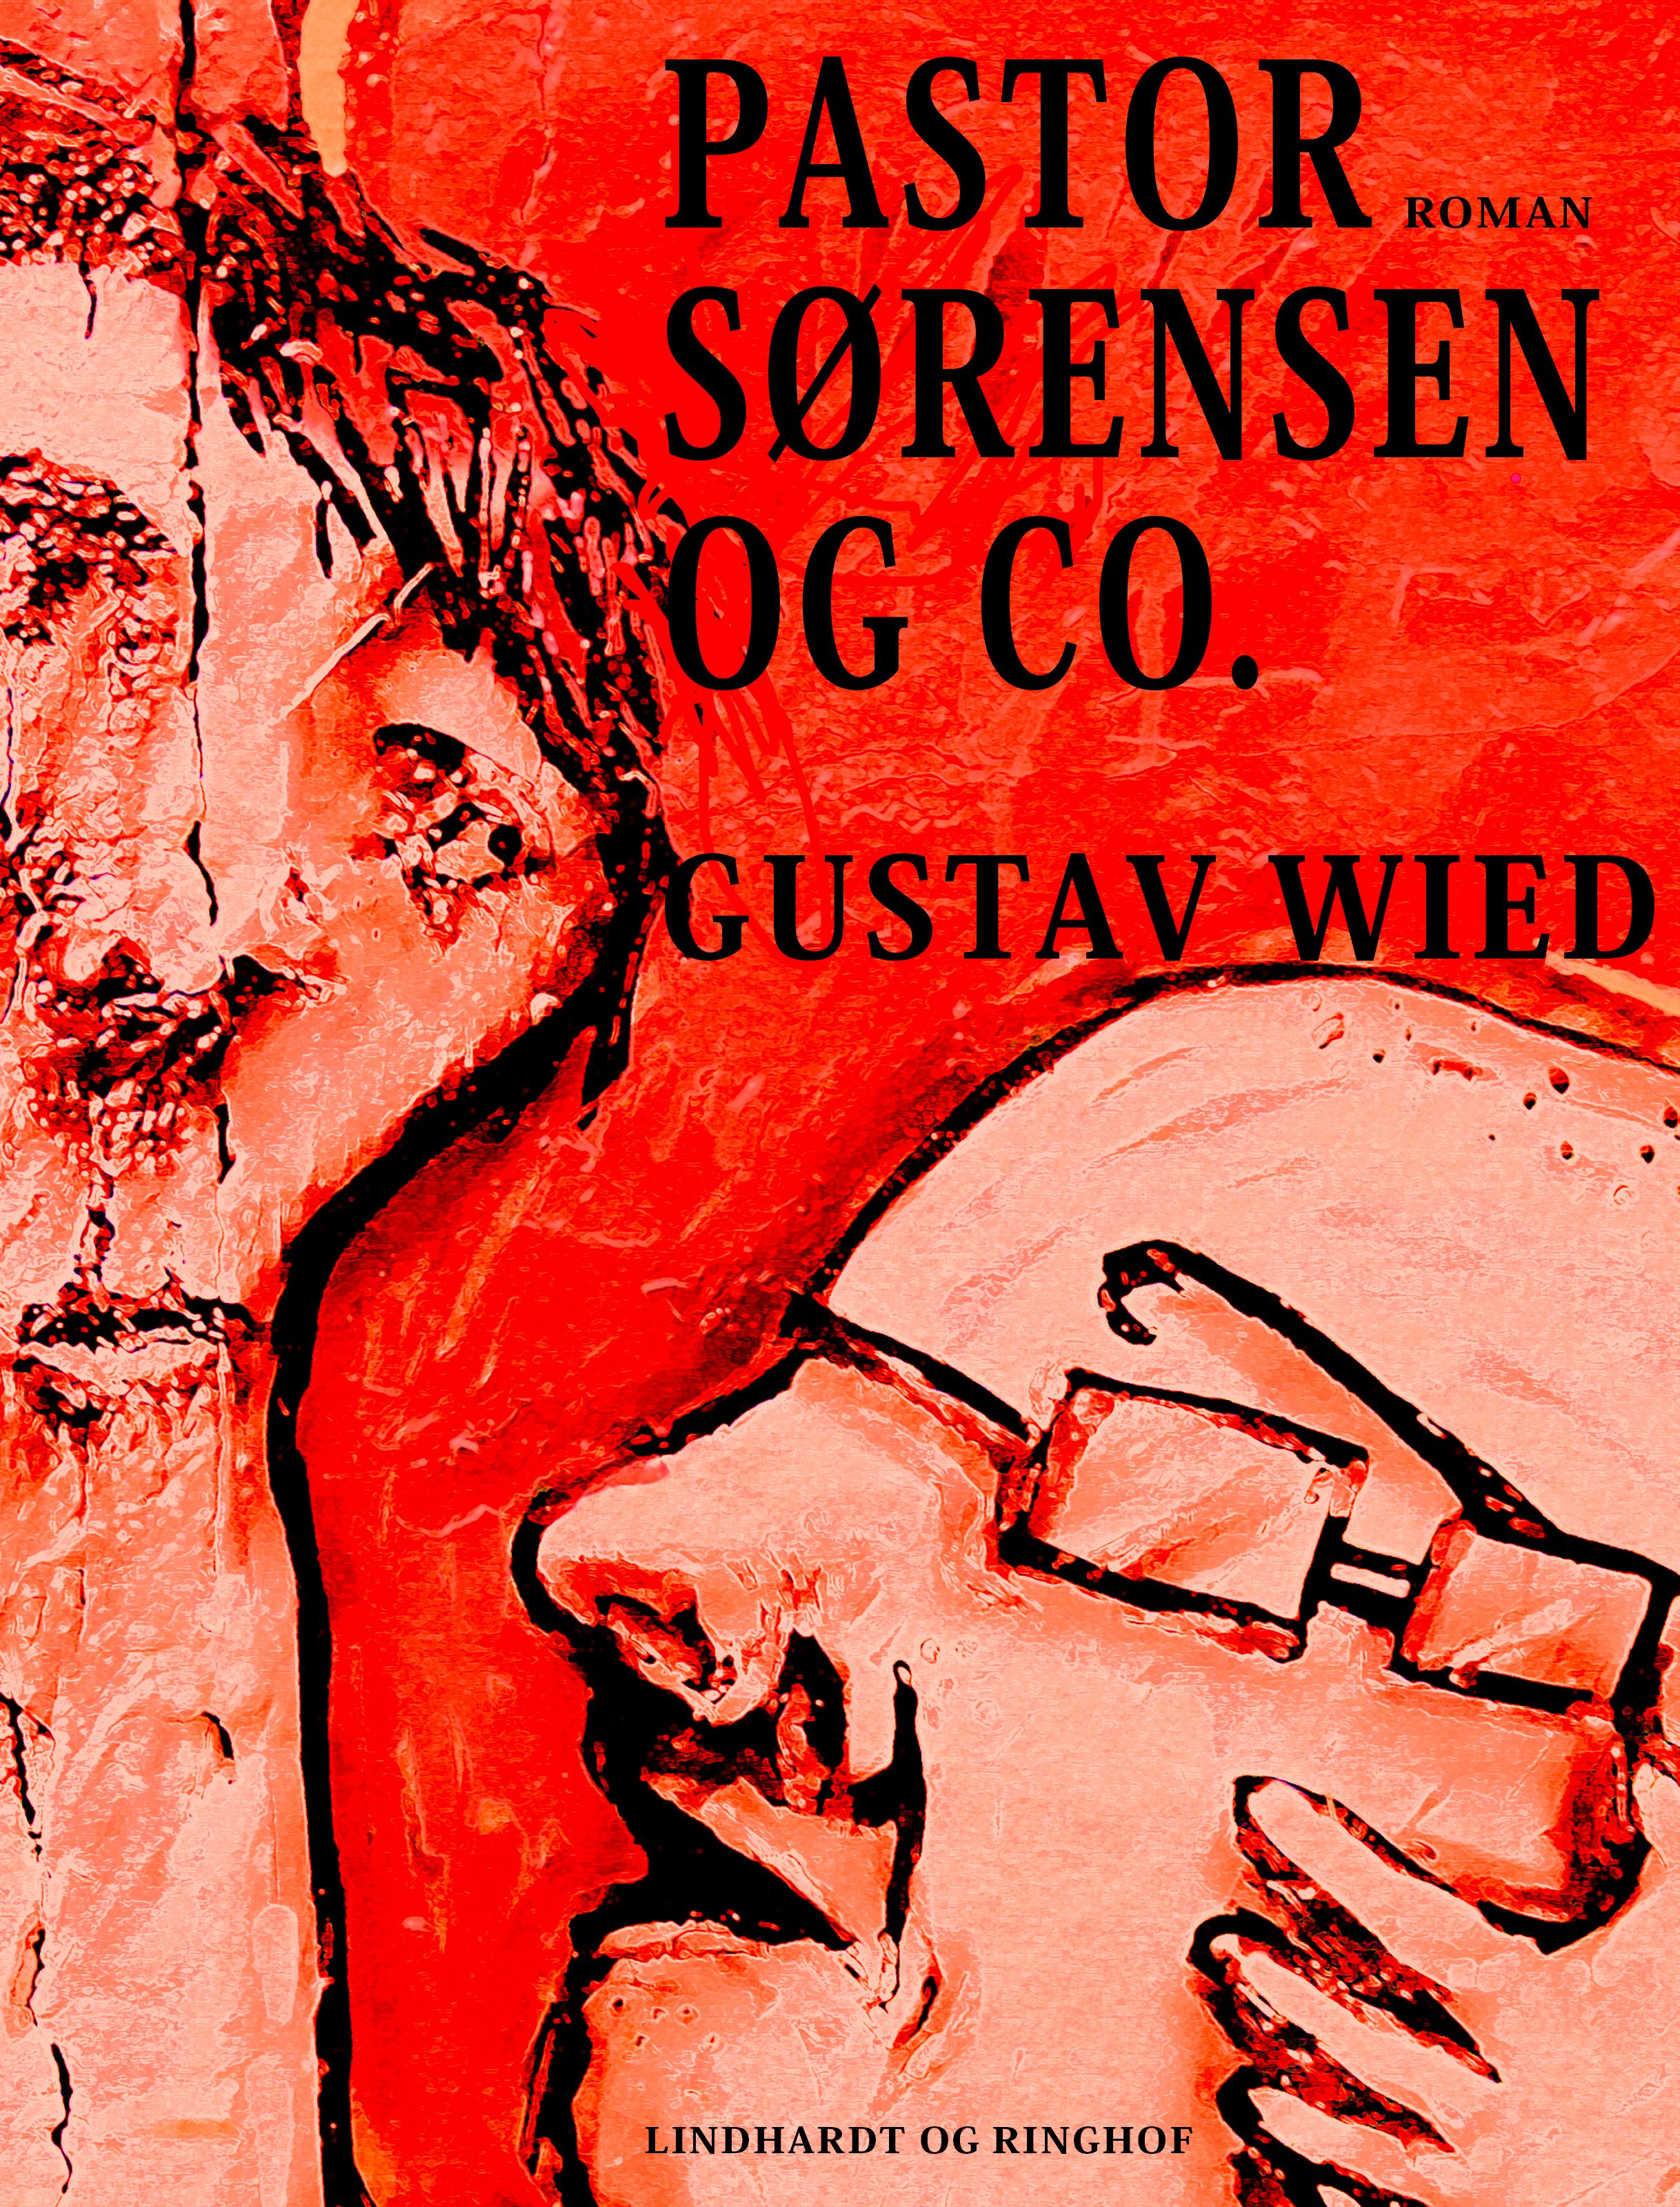 Pastor Sørensen & co., ljudbok av Gustav Wied